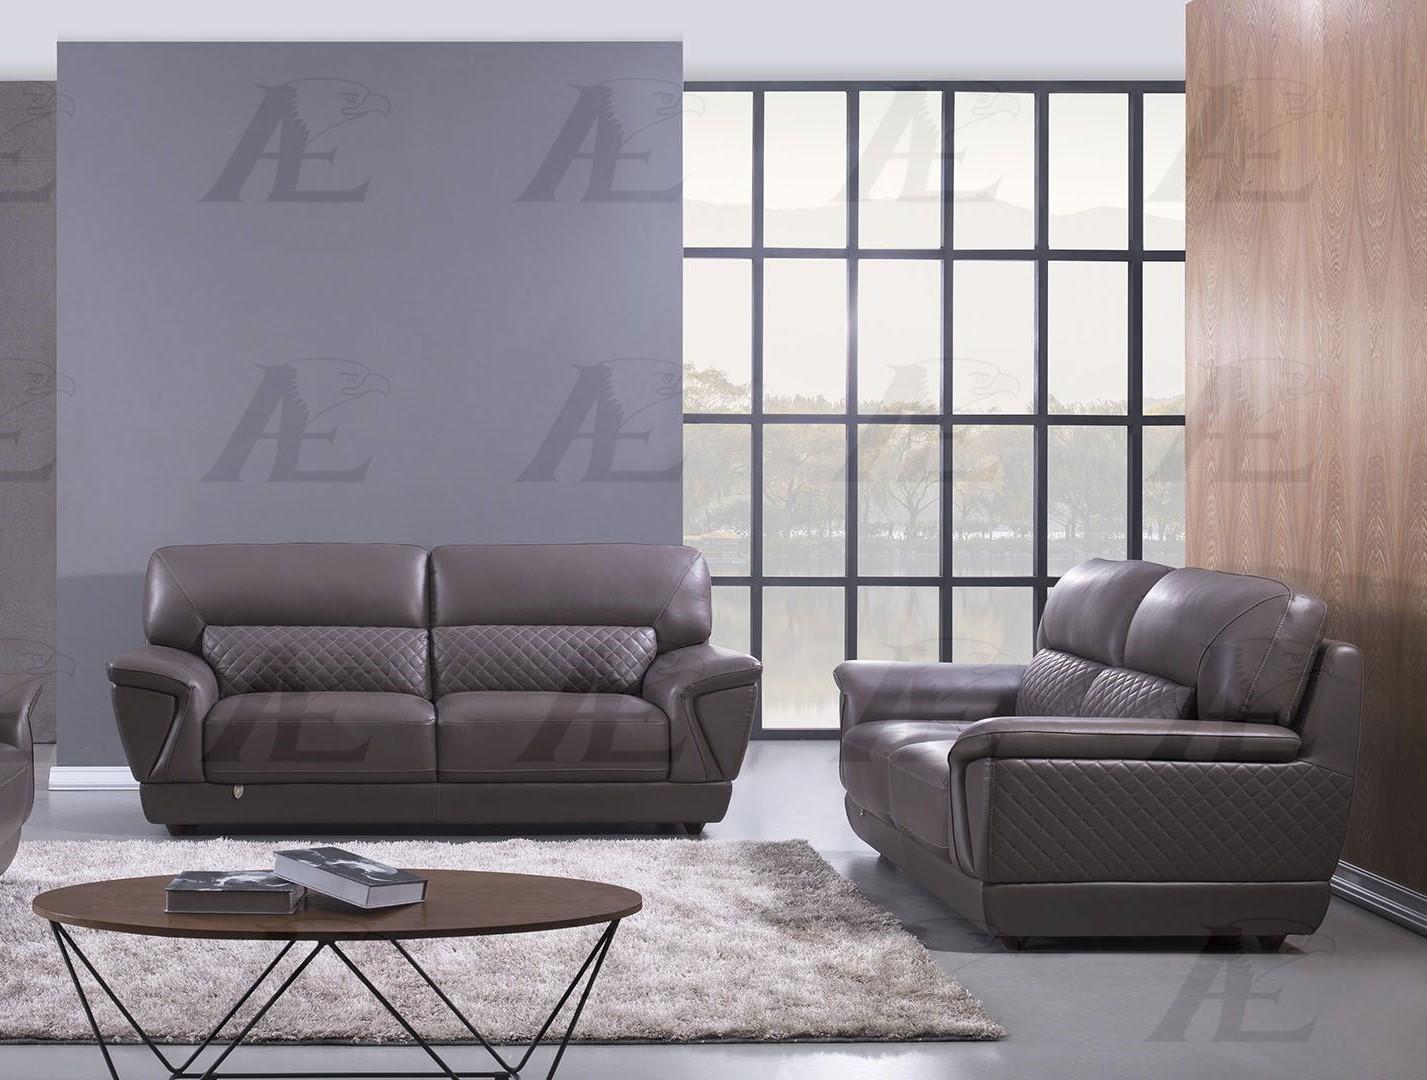 

    
EK099-DT- Set-2 American Eagle Furniture Sofa Set
